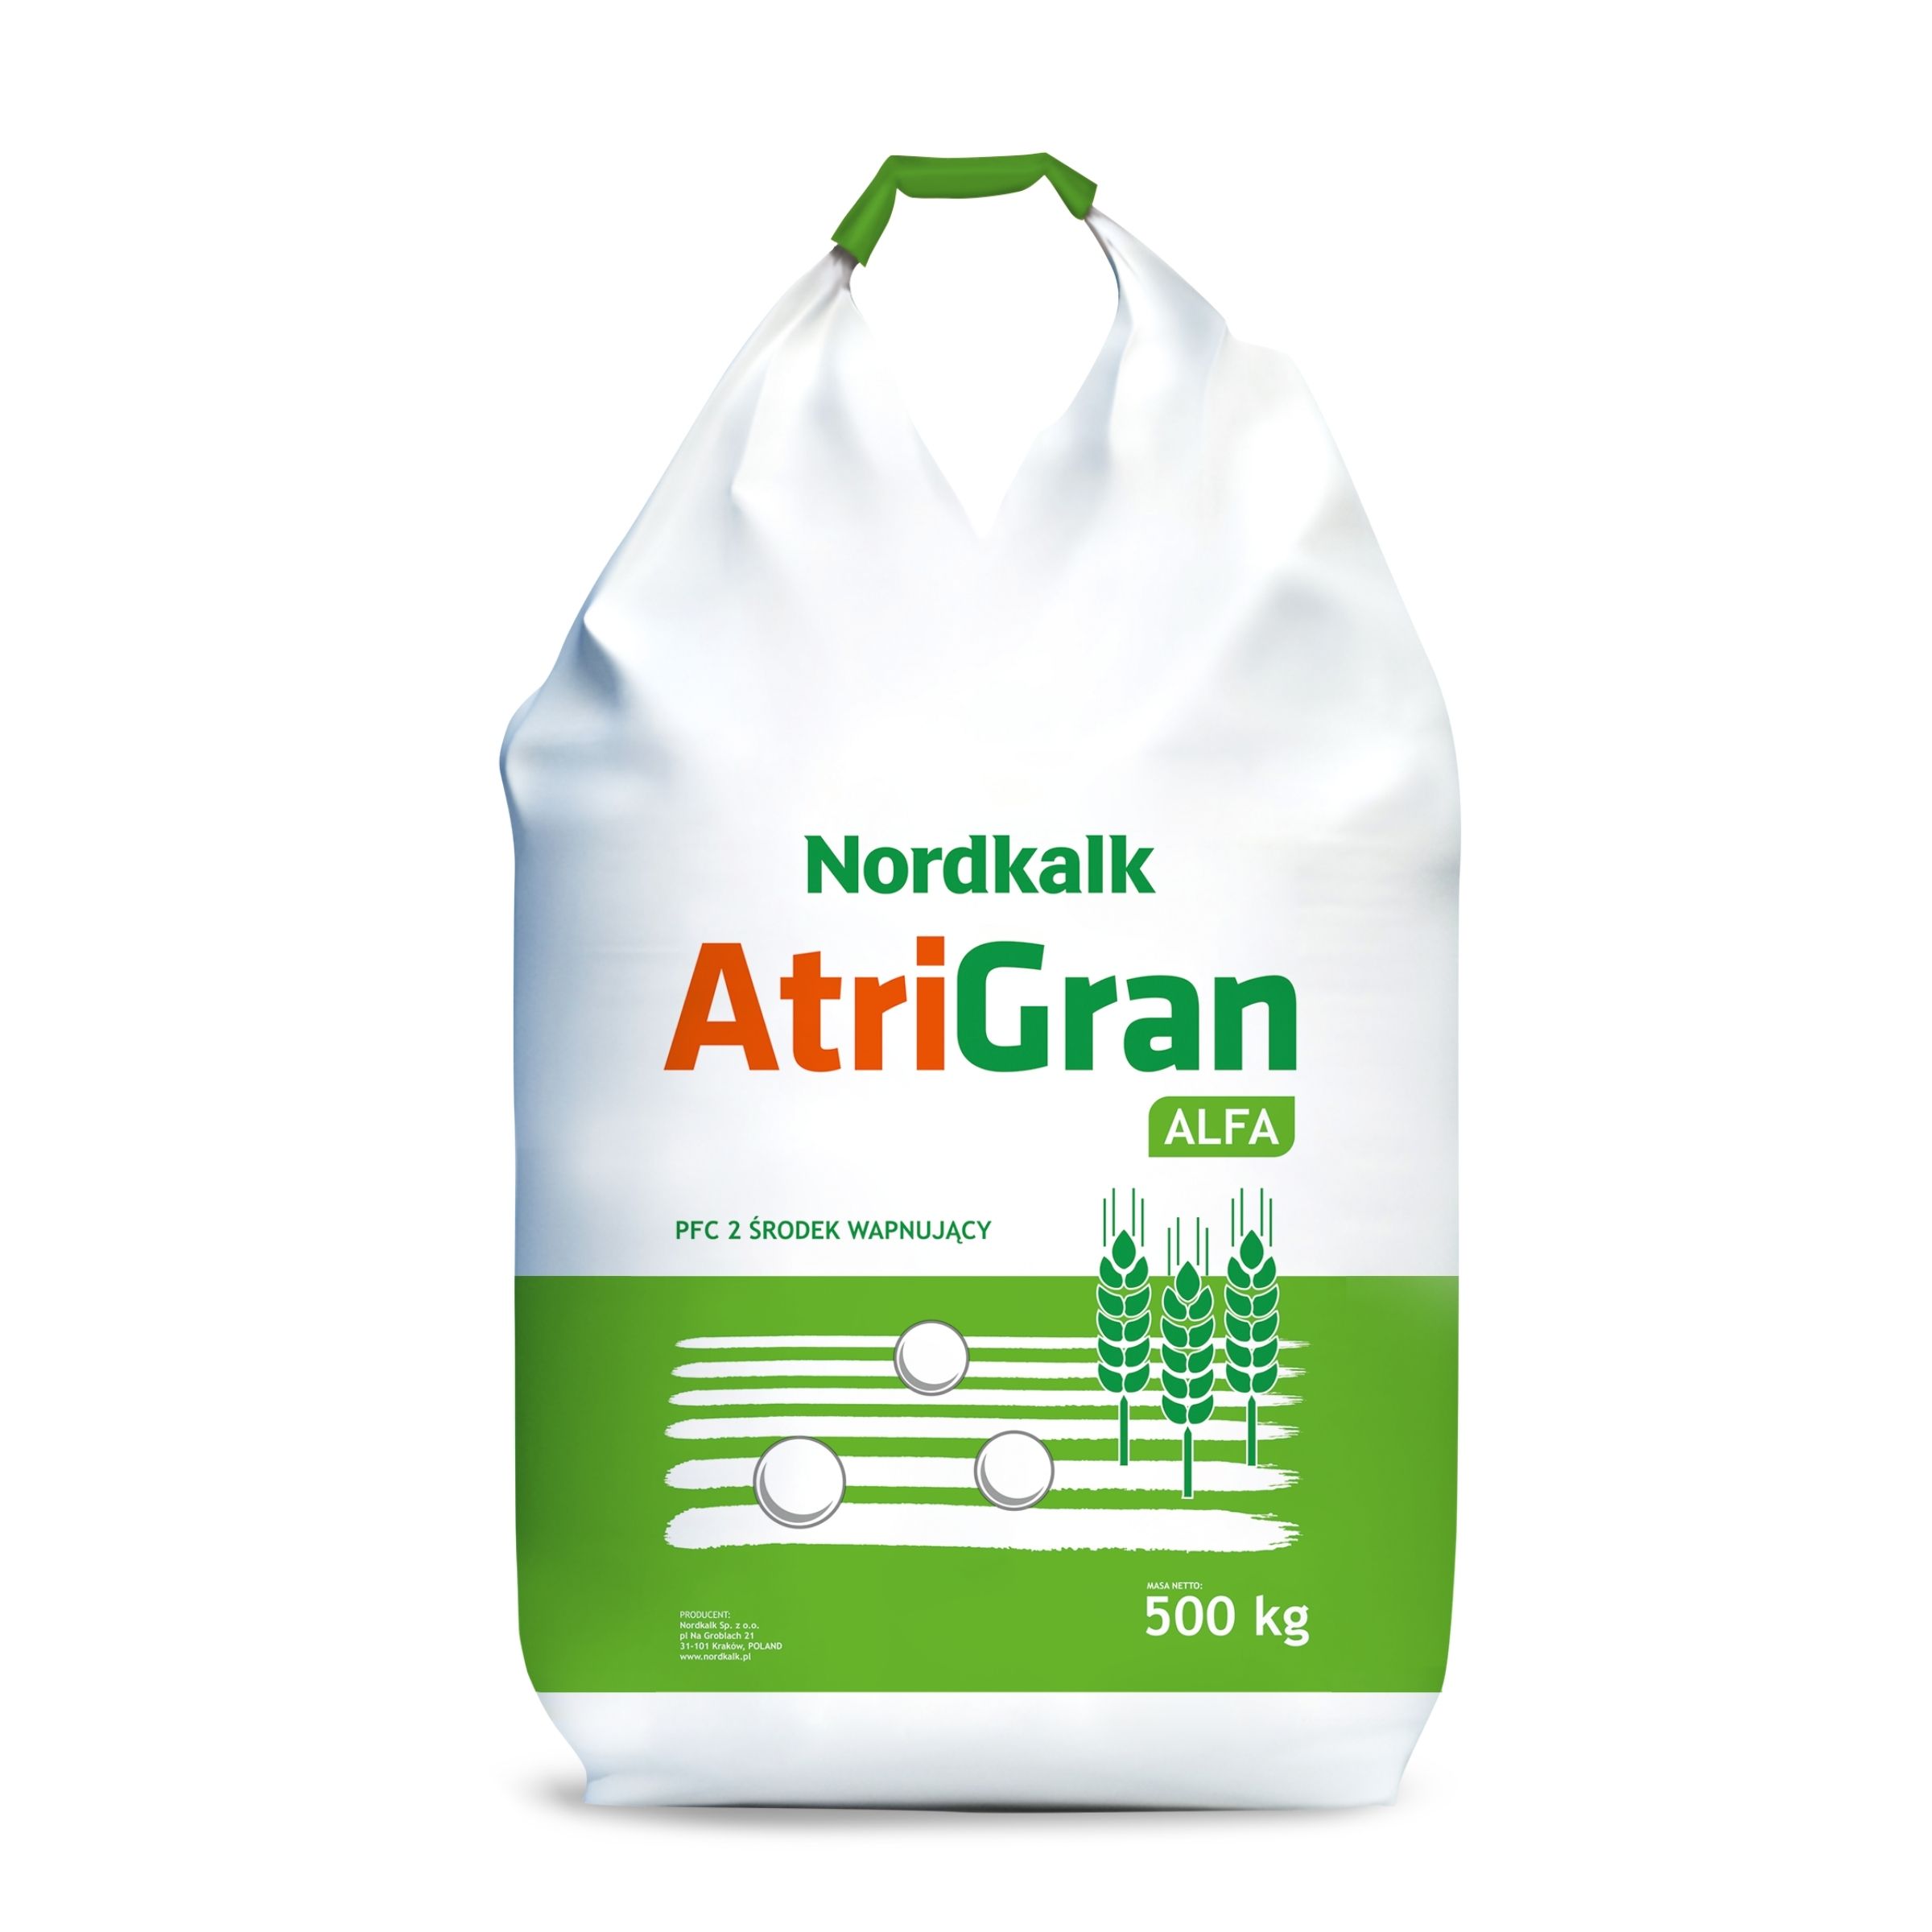 AtriGran-Alfa-500kg.jpg